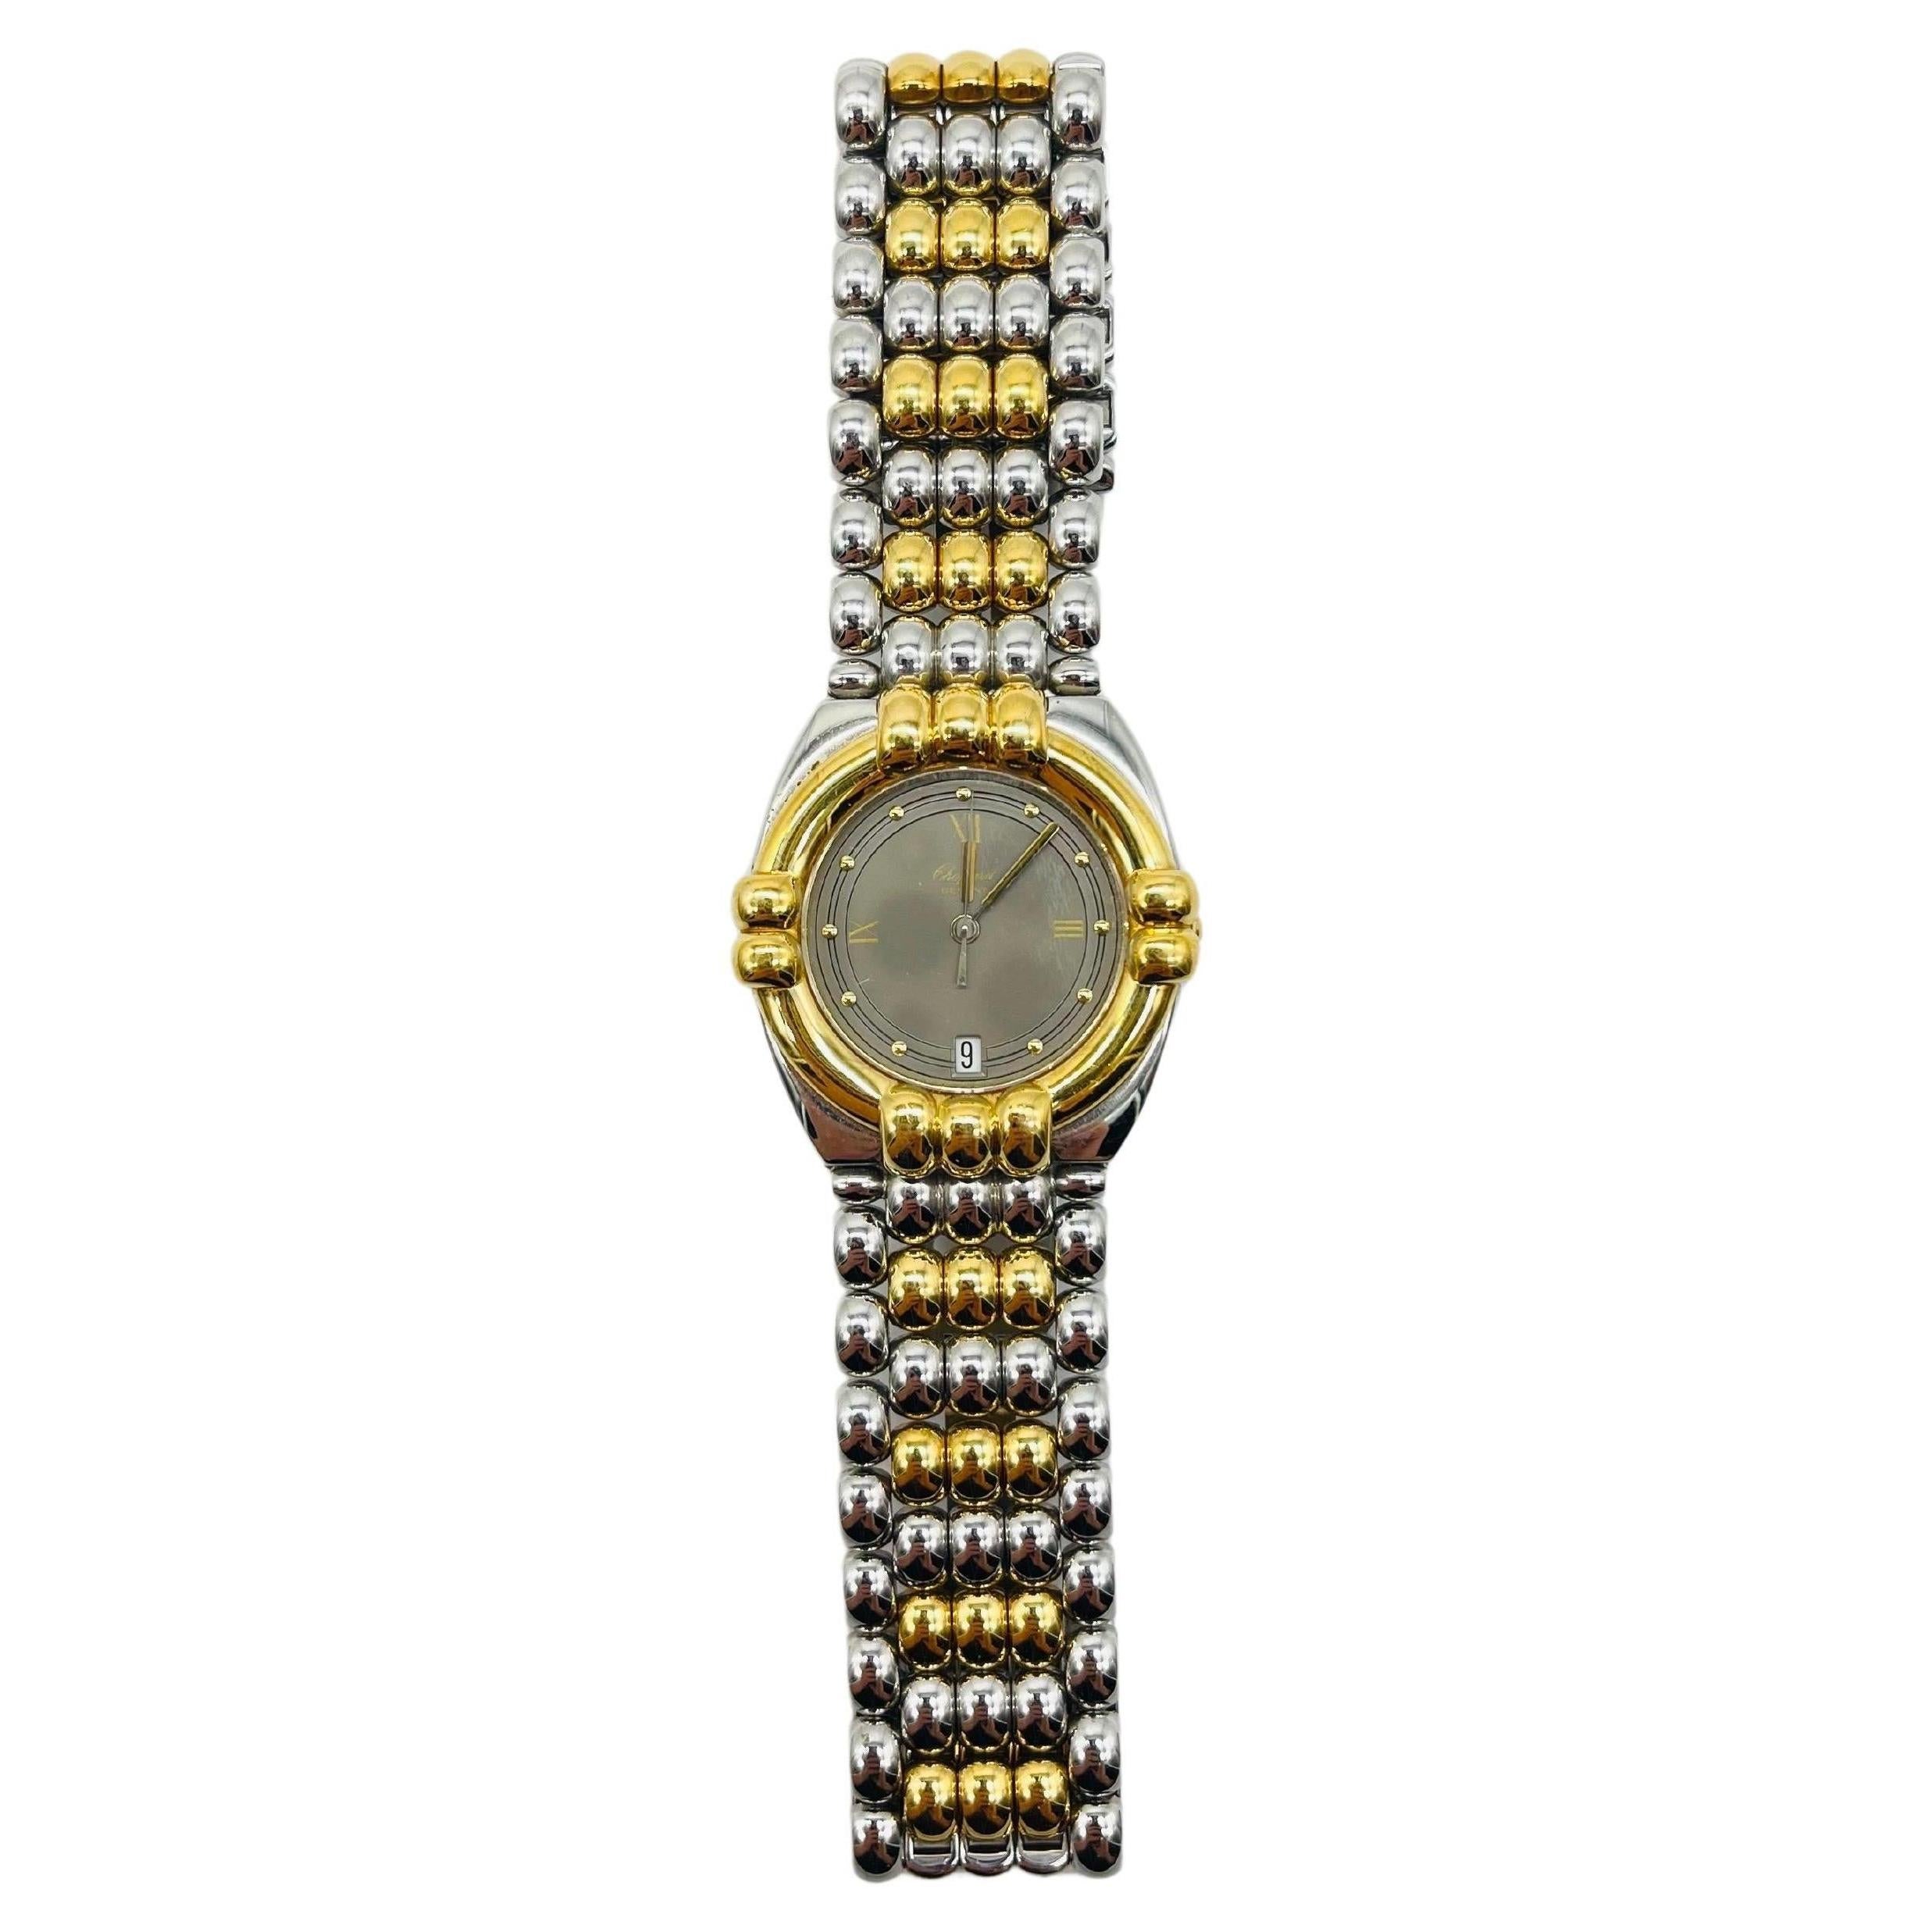 Majestic Chopard genve wrist watch Gstaad 33/8120 For Sale 5